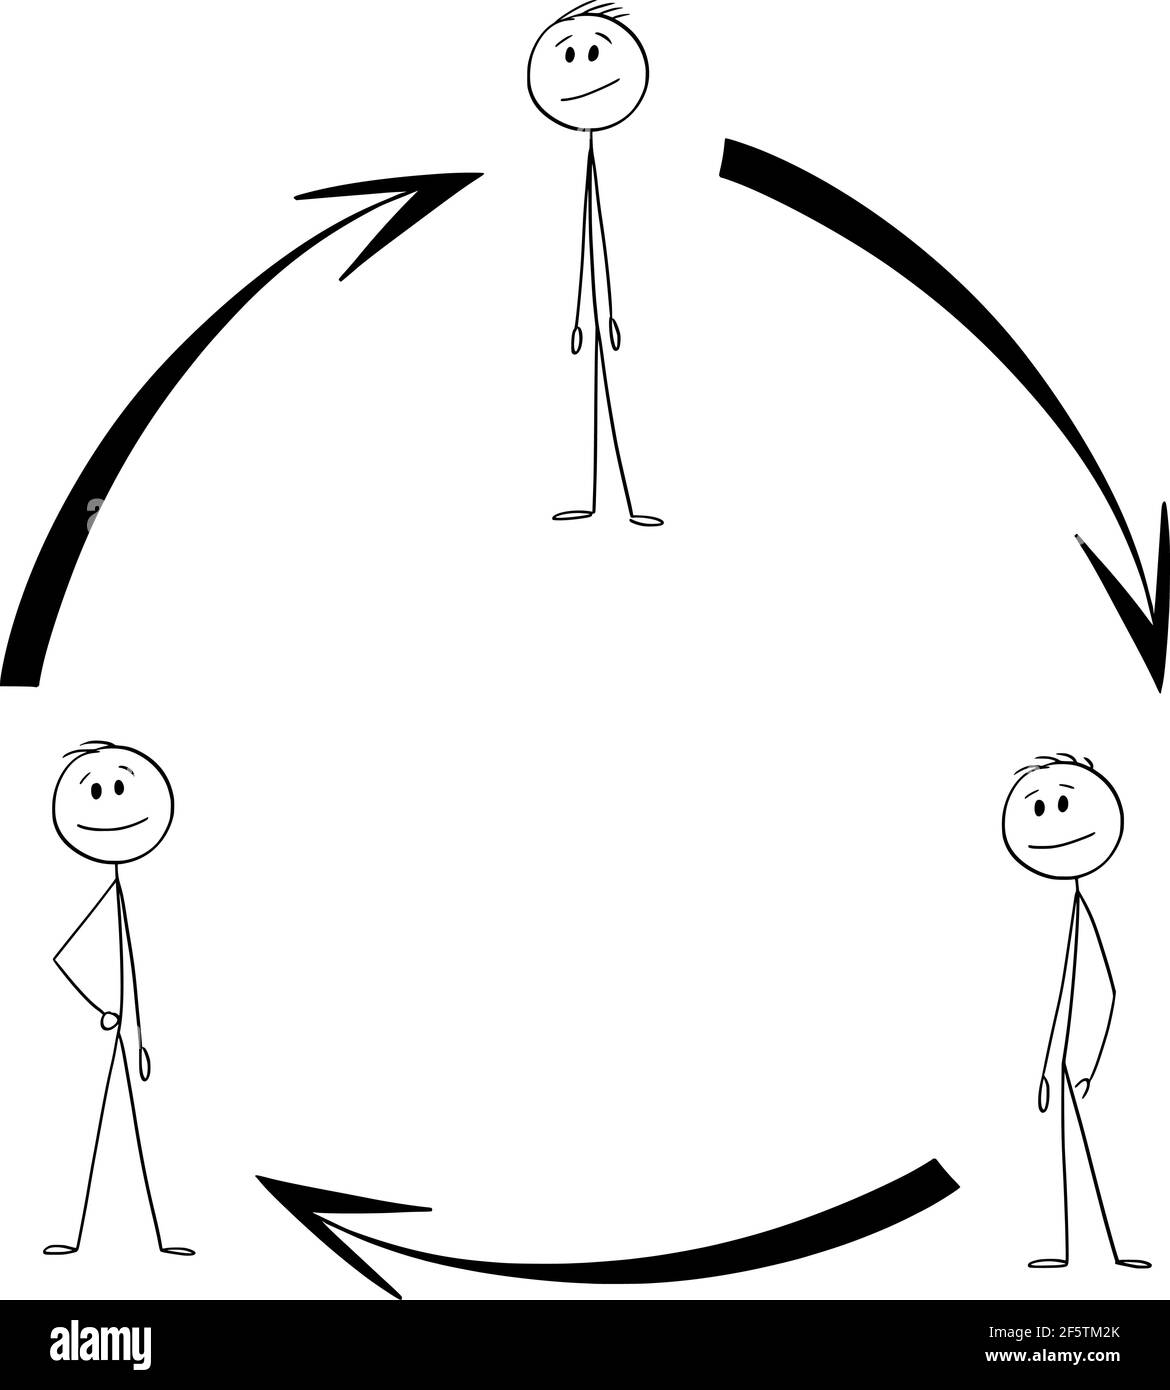 Schema di cooperazione di squadra o di lavoro di squadra, frecce in cerchio, illustrazione di figura del bastone di cartoon vettoriale Illustrazione Vettoriale